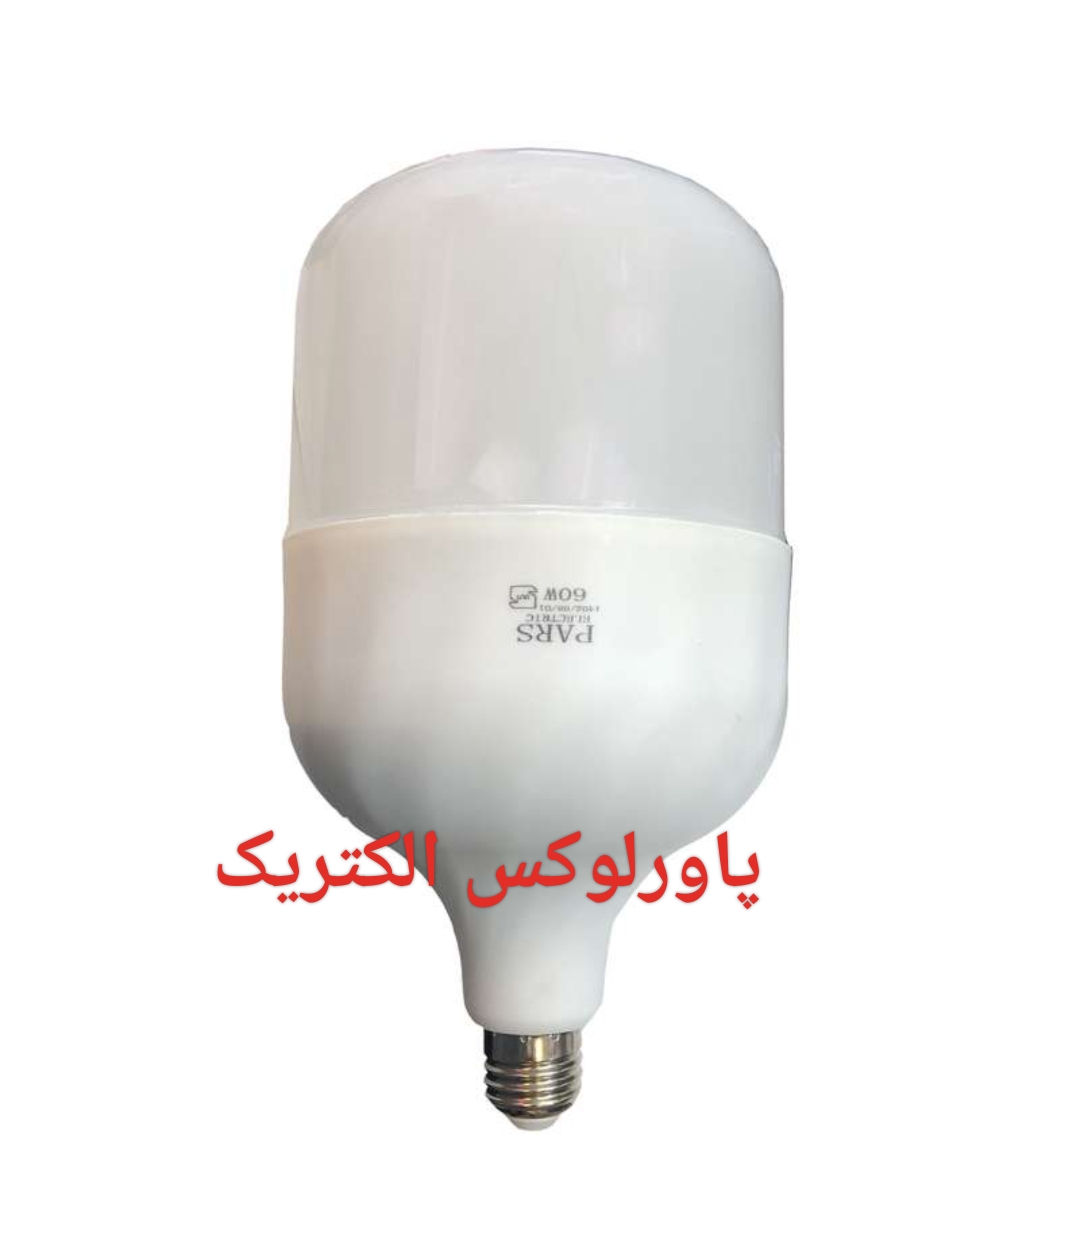 لامپ 60 واتLEDپارس الکتریک(بدنه بزرگ) -گارانتی ۱۲ماه